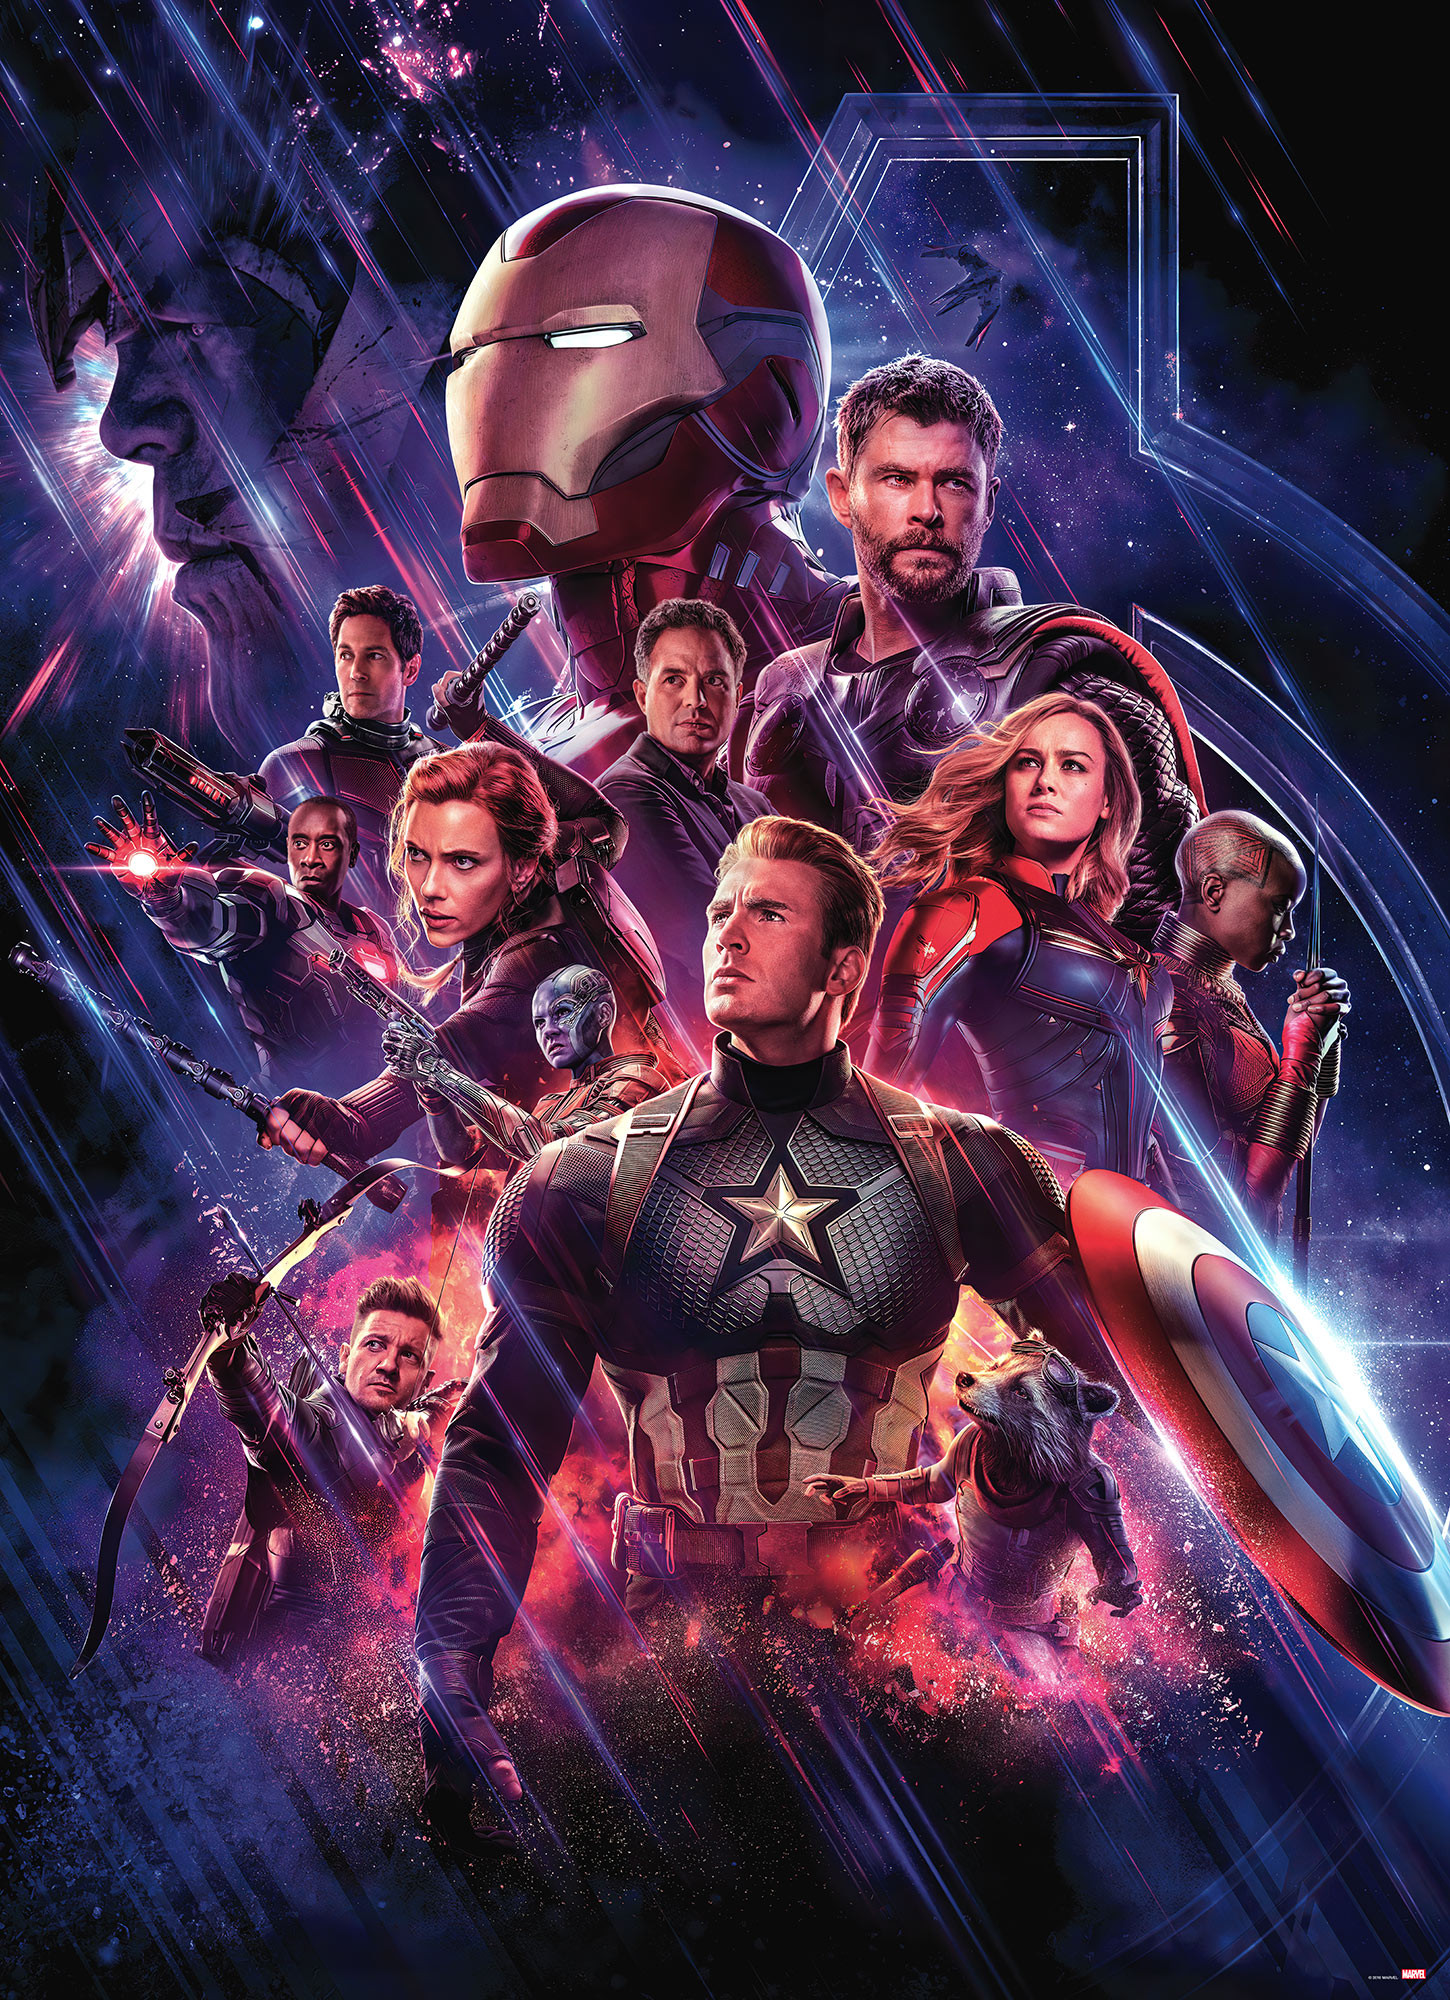 Photomurals  Photomural on paper Avengers Endgame Movie Poster by Komar®